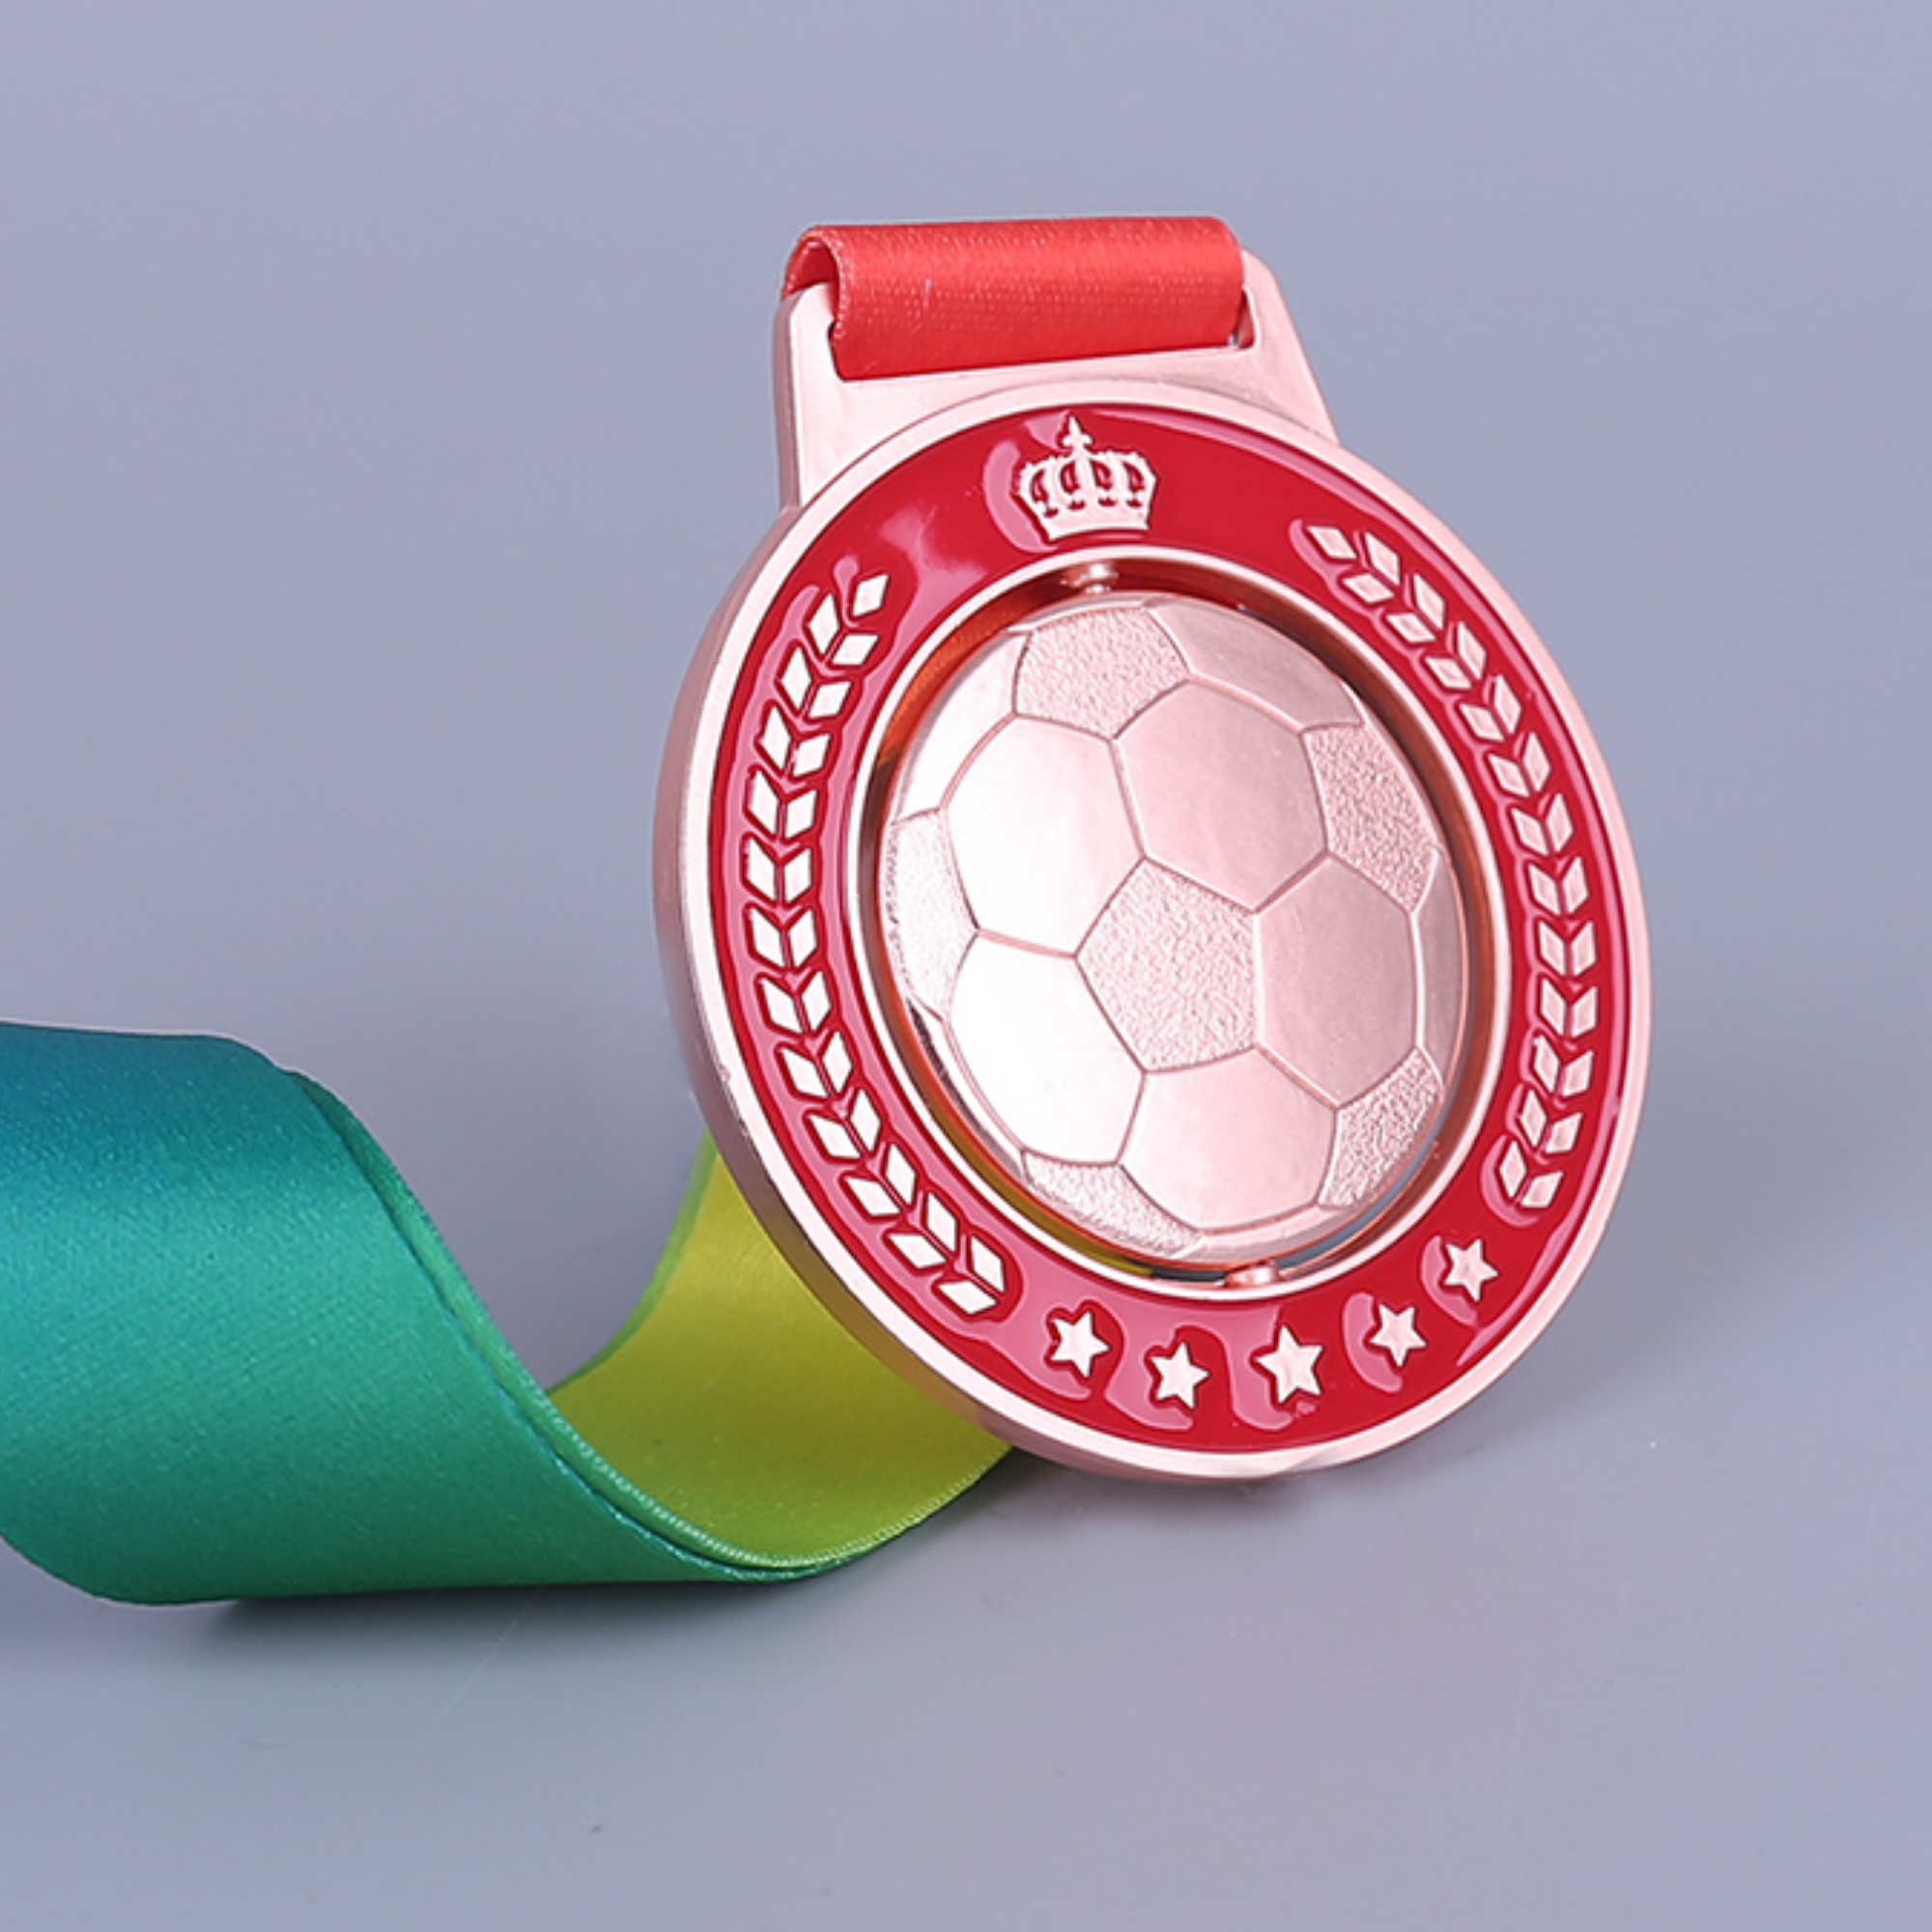 Medals plastic for kids soccer medal